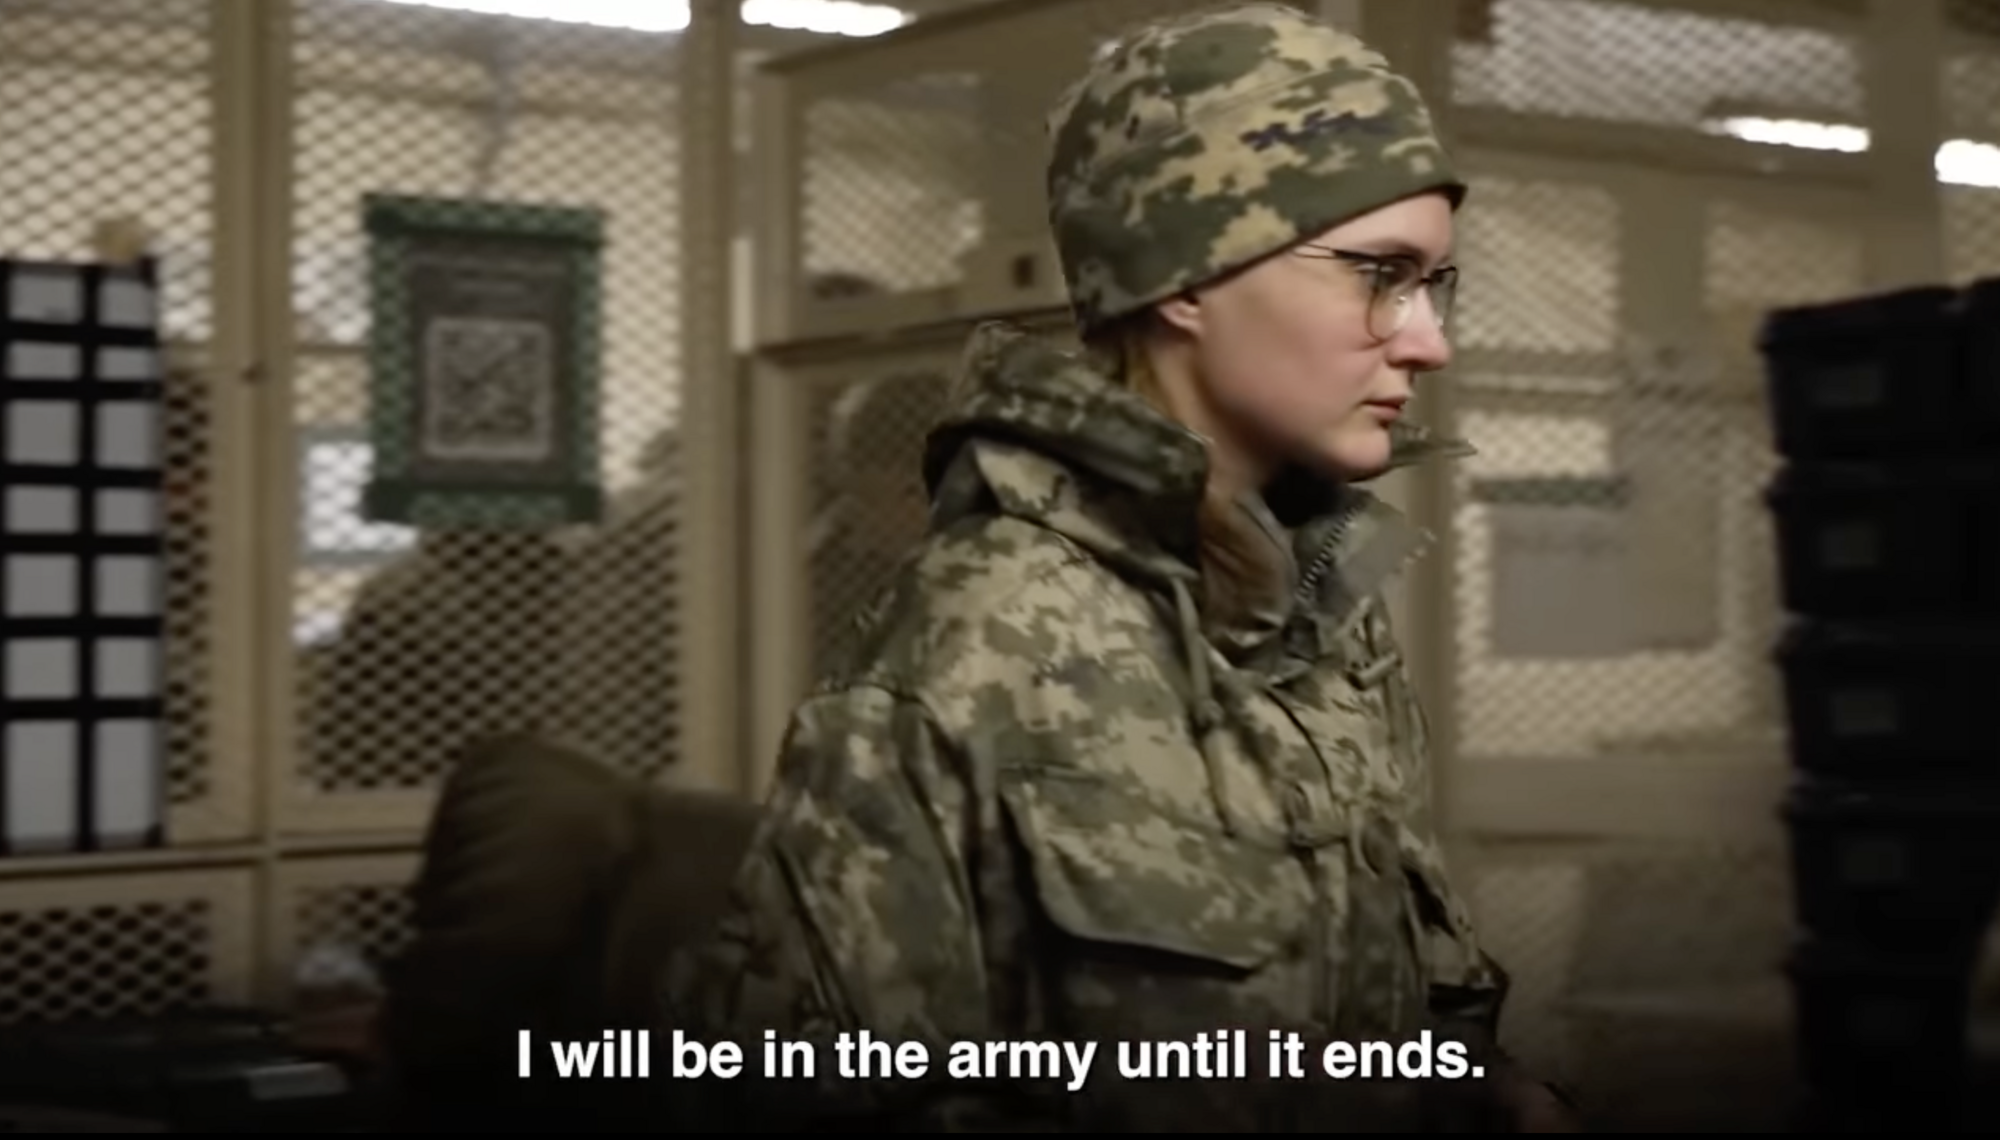 "Україна надихнула світ": військовослужбовиця ЗСУ розповіла про вплив війни на її життя. Відео
